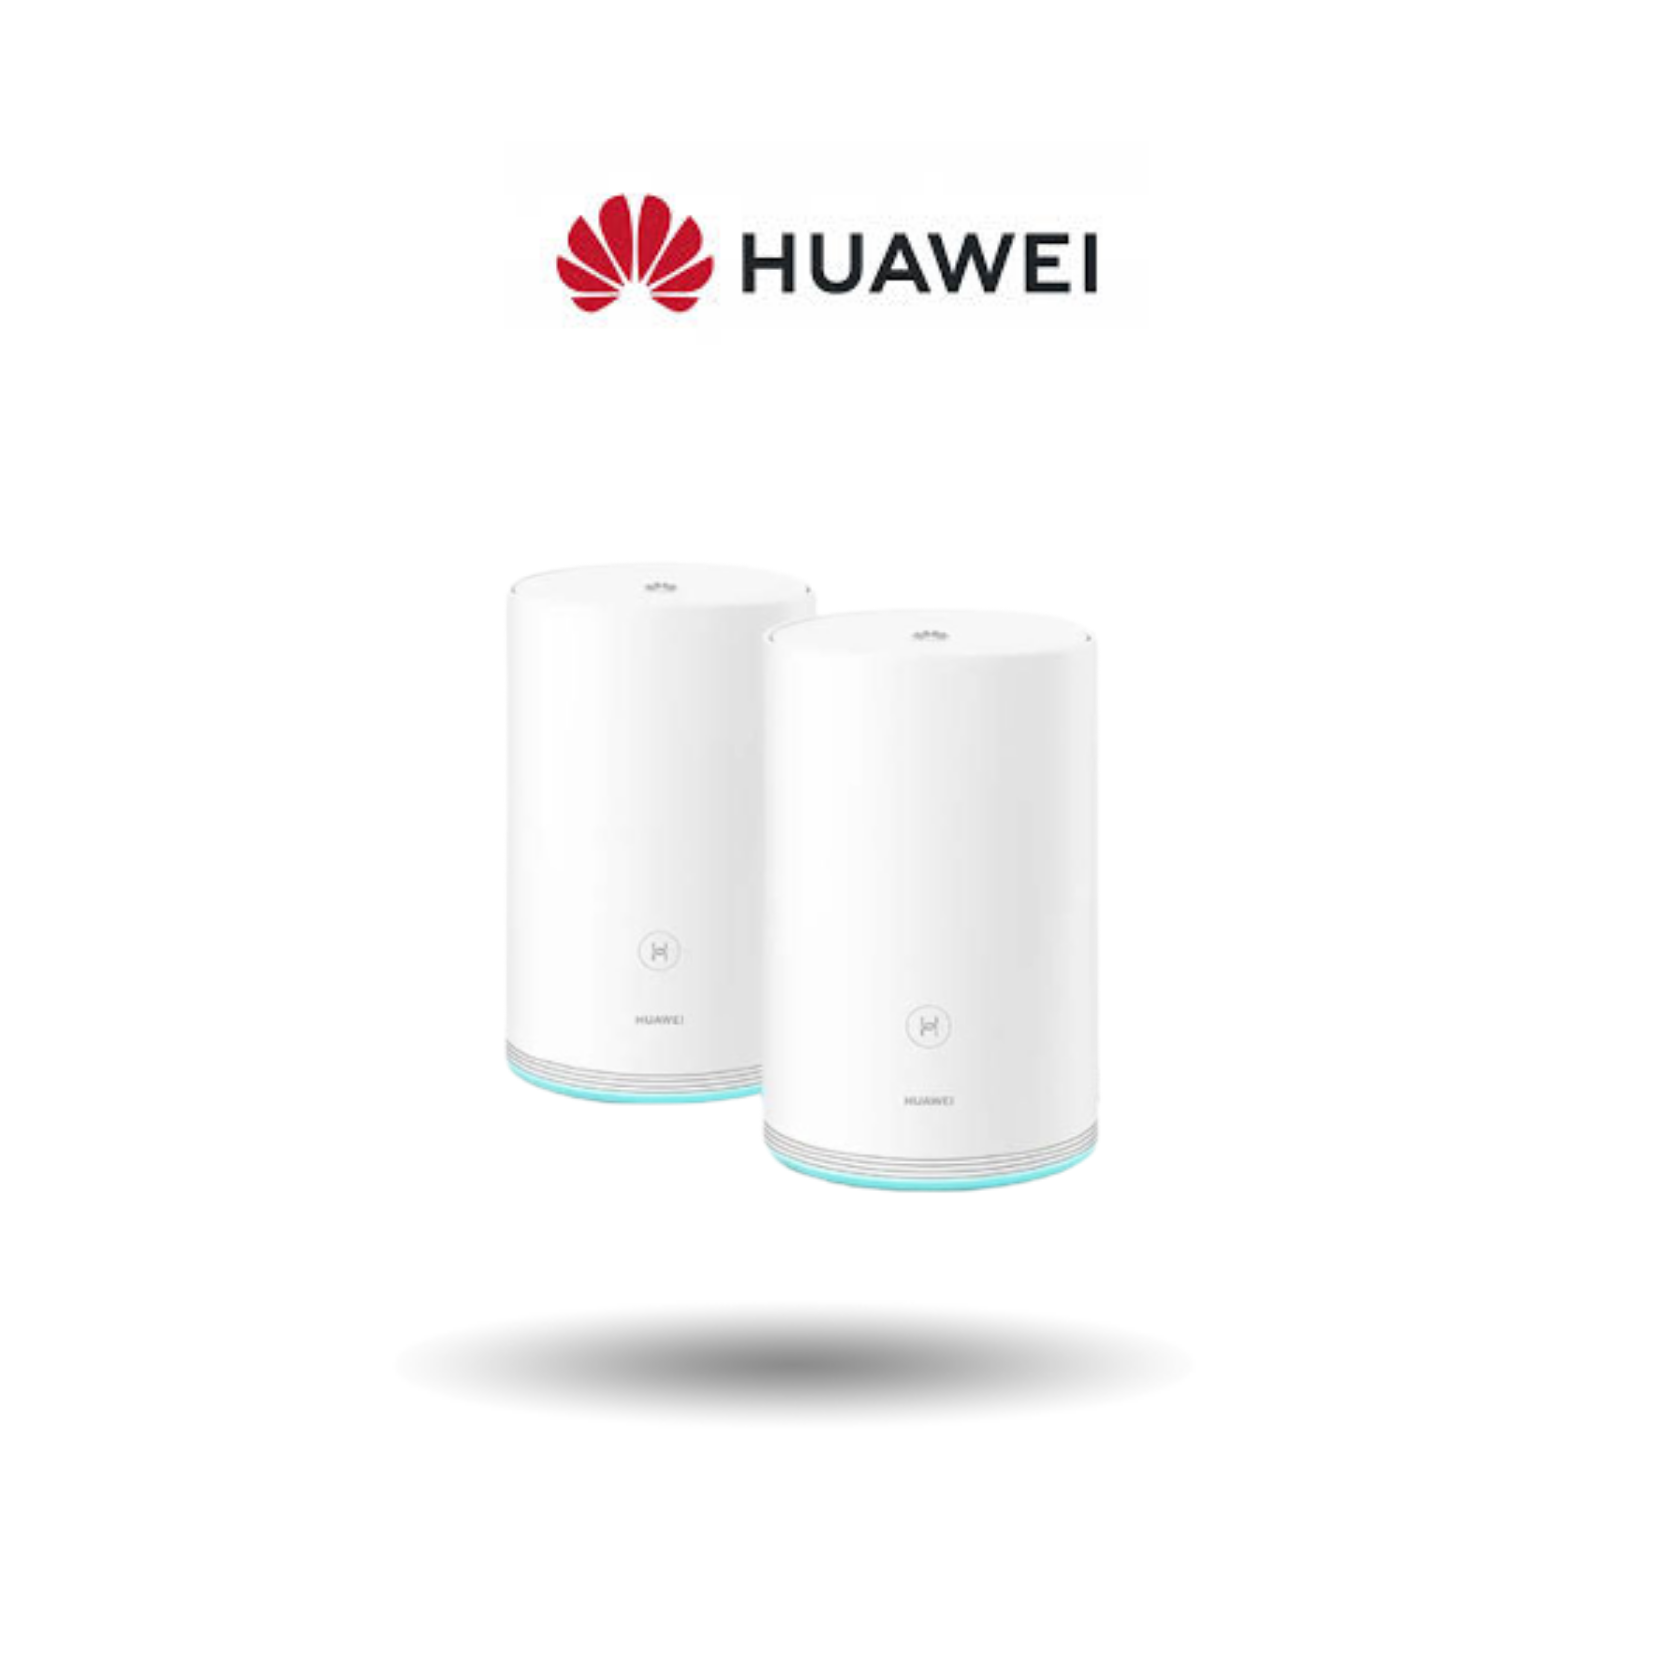 Huawei Q2 Mesh Wi-Fi Router